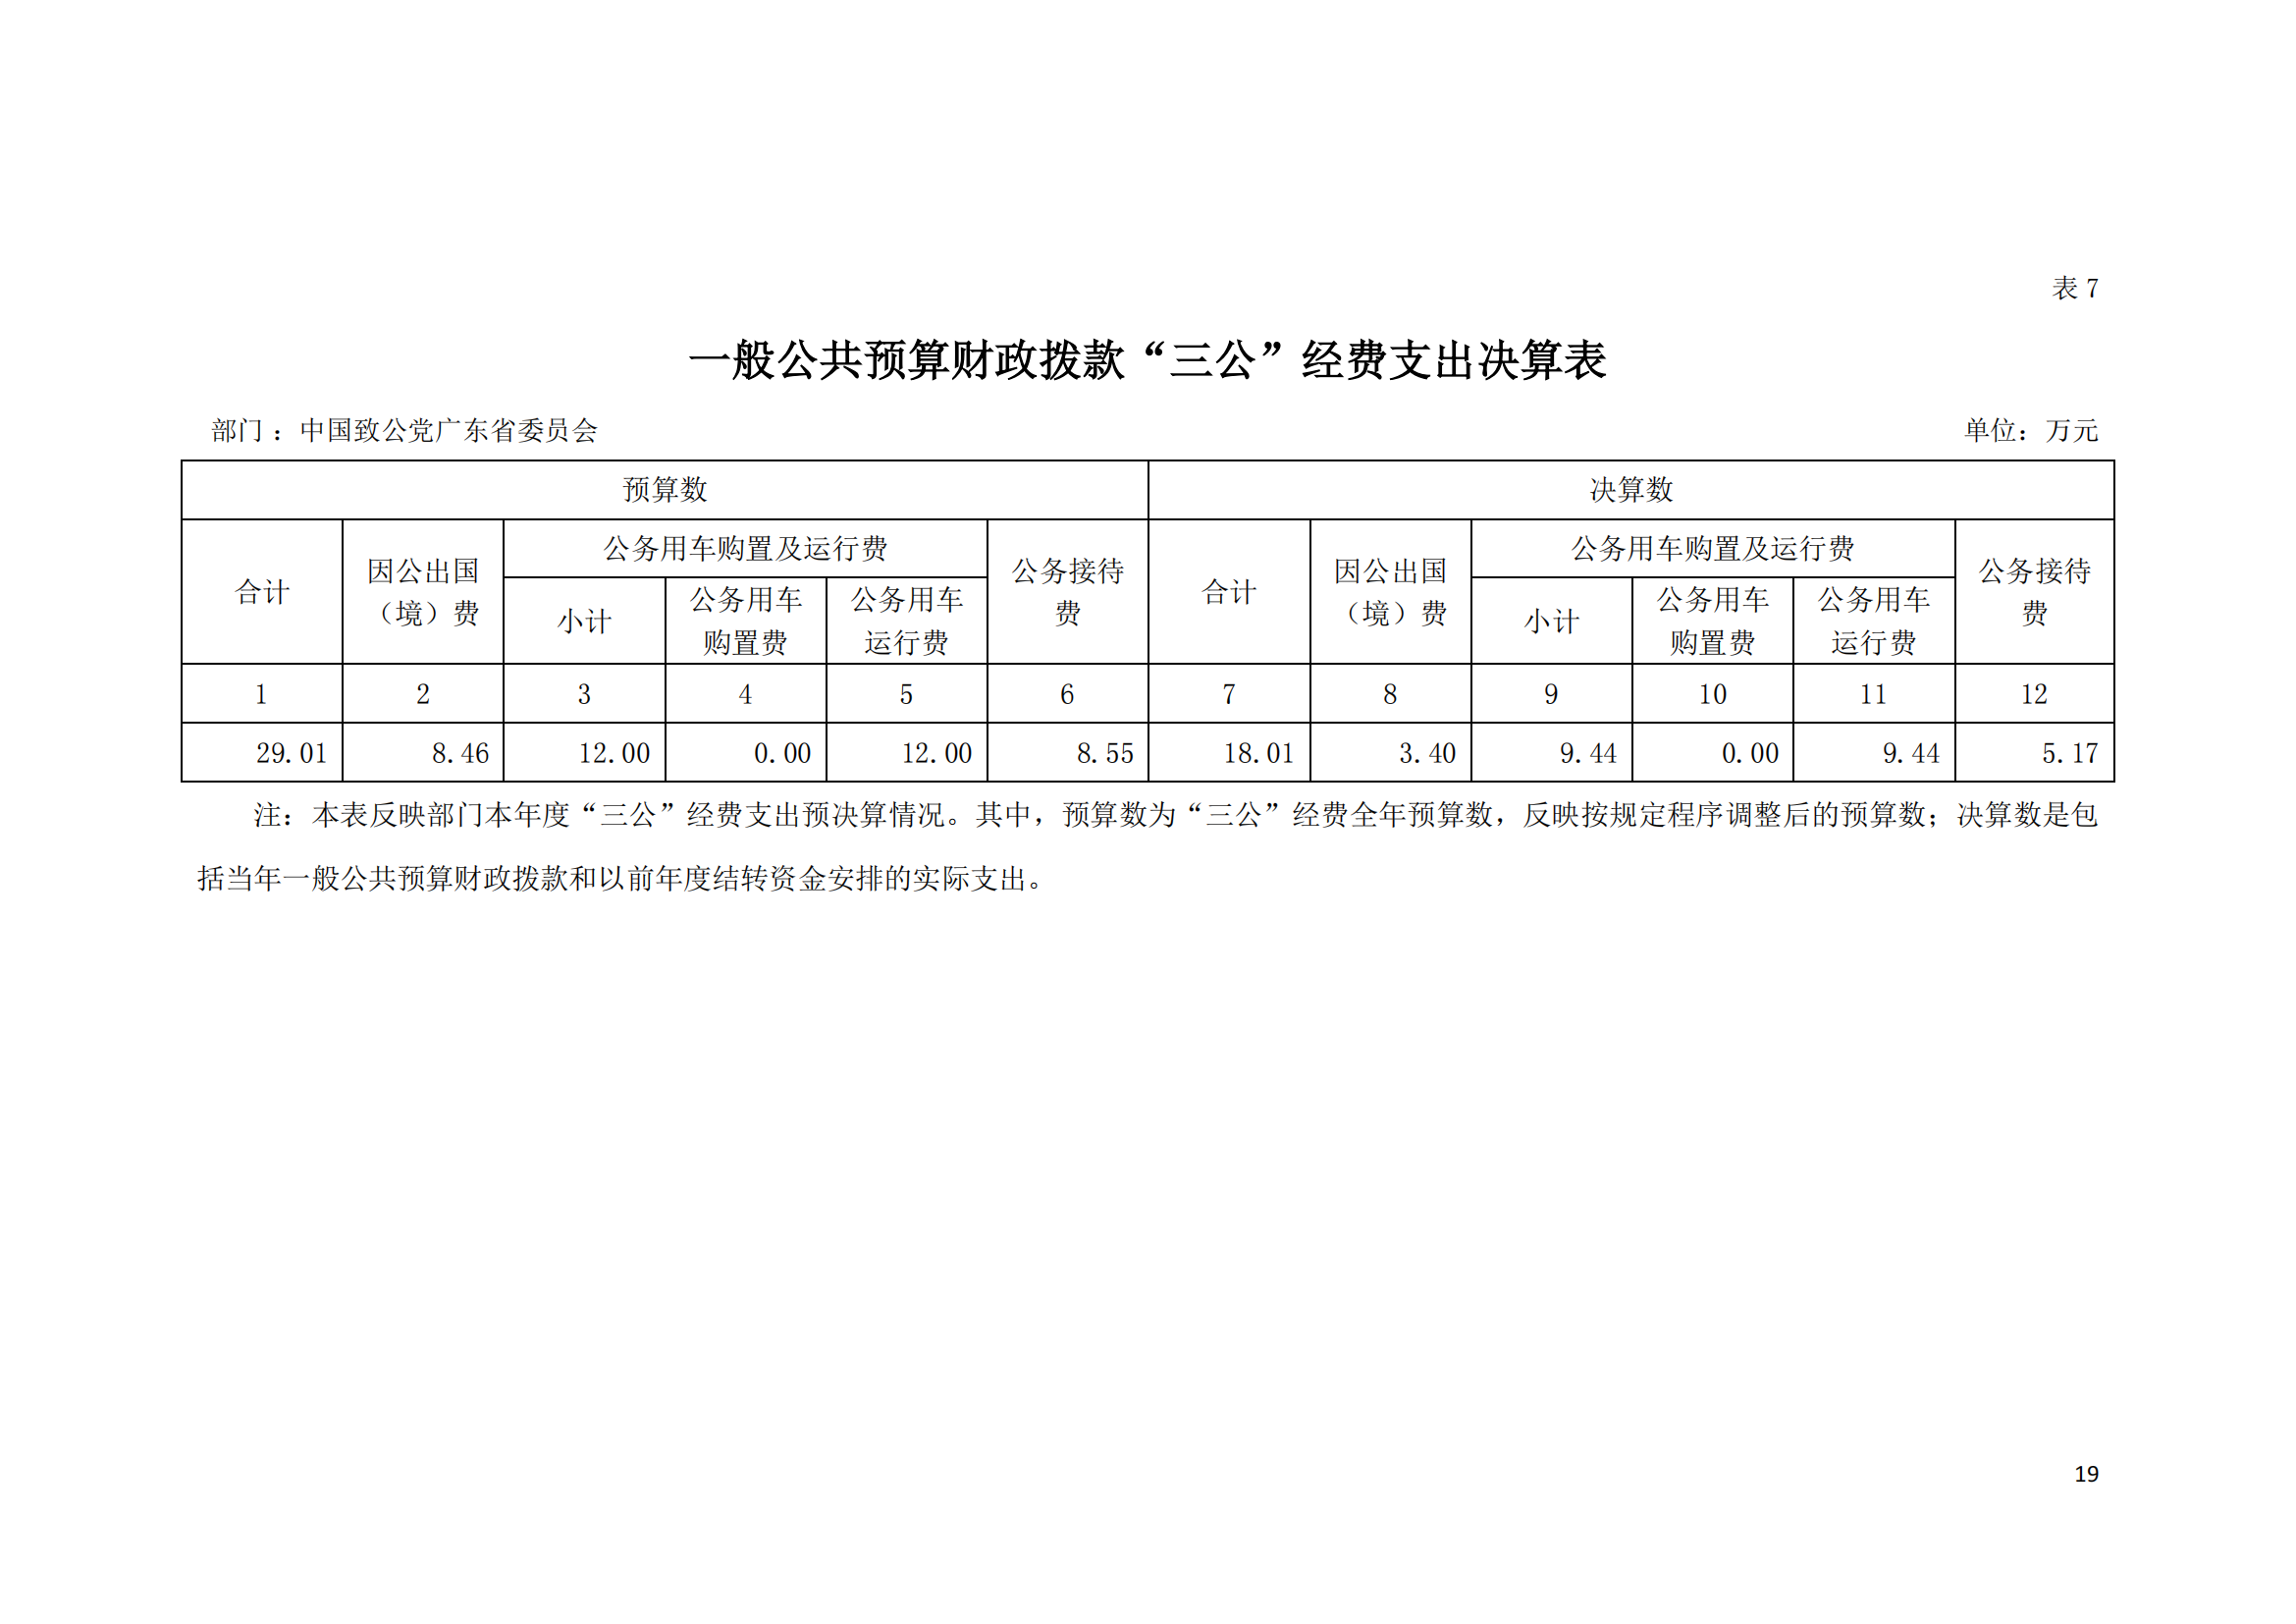 2021年中国致公党广东省委员会部门决算（0706更新）_18.png